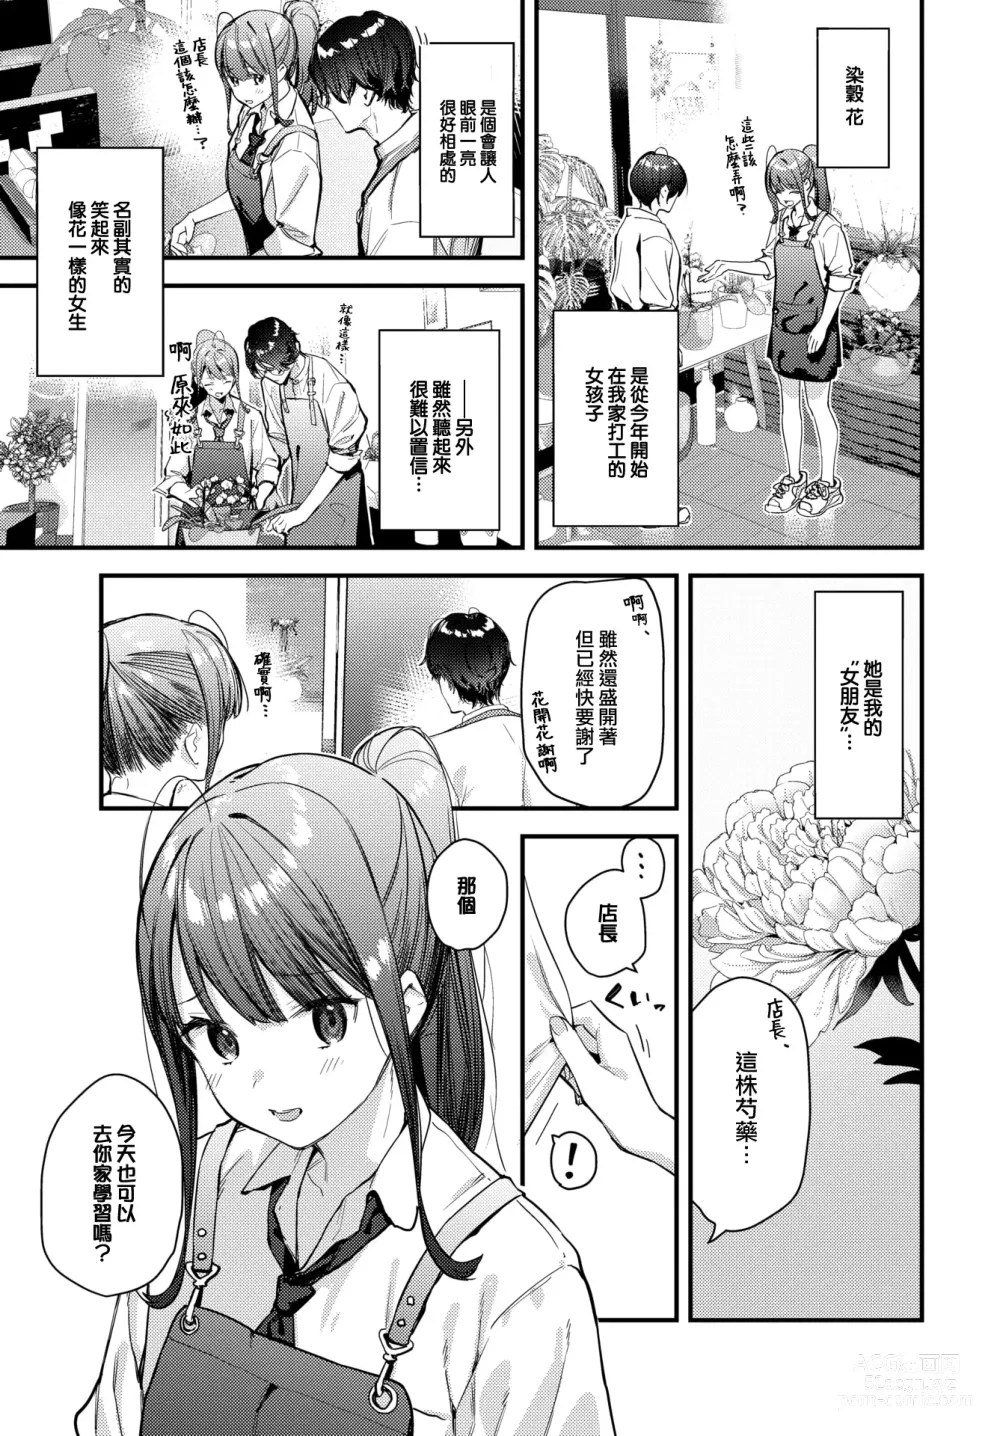 Page 4 of manga Bokudake no Hana ~Jouhen~